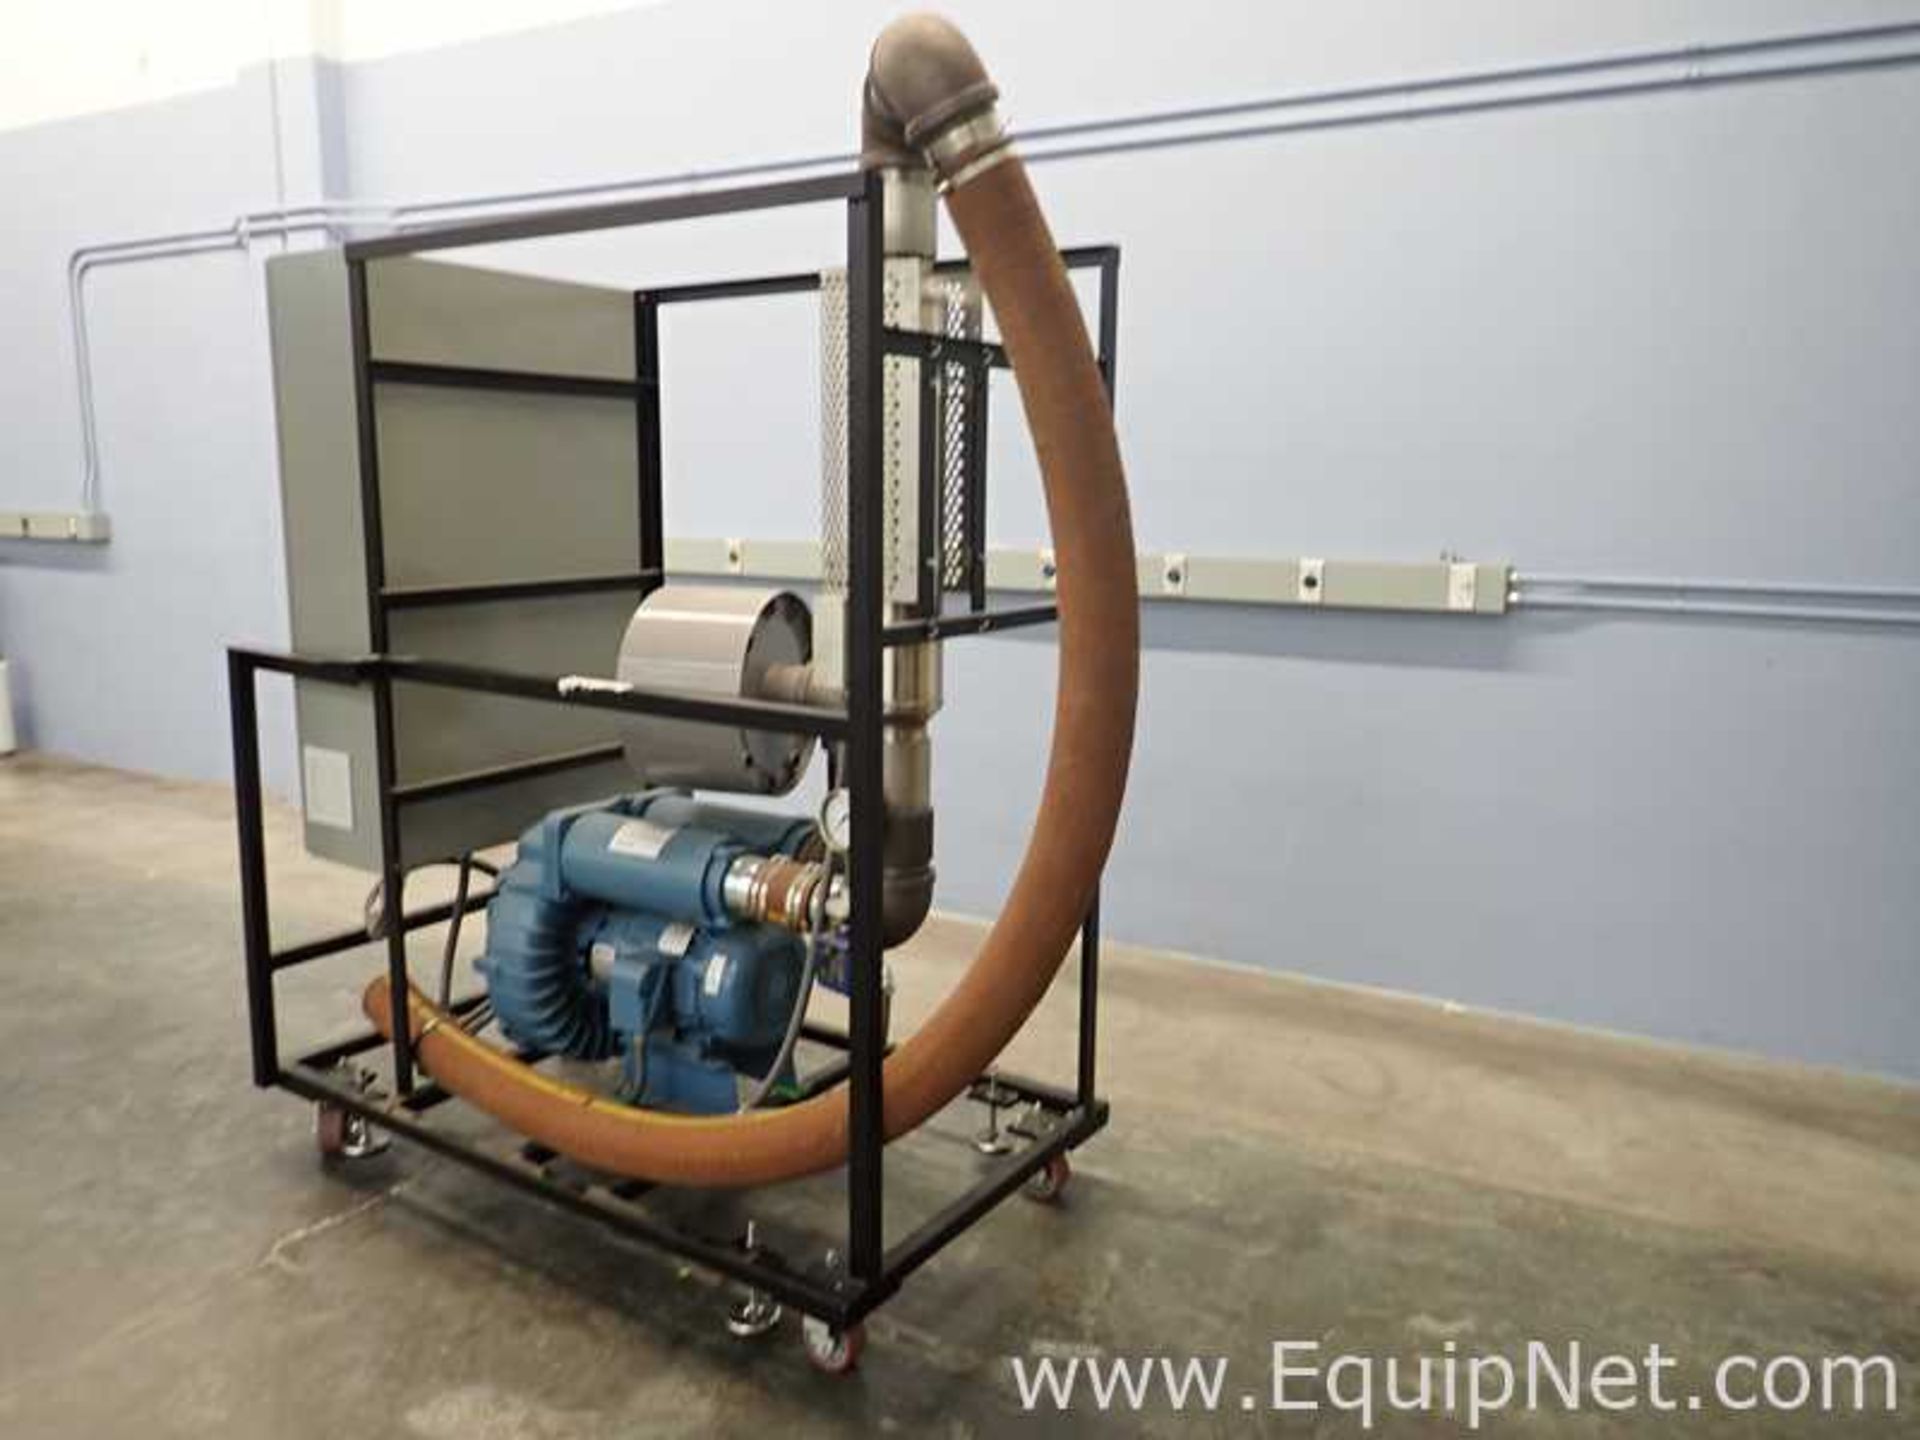 Lewco NS-HDSB-26-120 w/VFD Conveyor Oven w/Heat Tech NKE Spectra HE Ultra Acoustic Dryer - Image 18 of 25